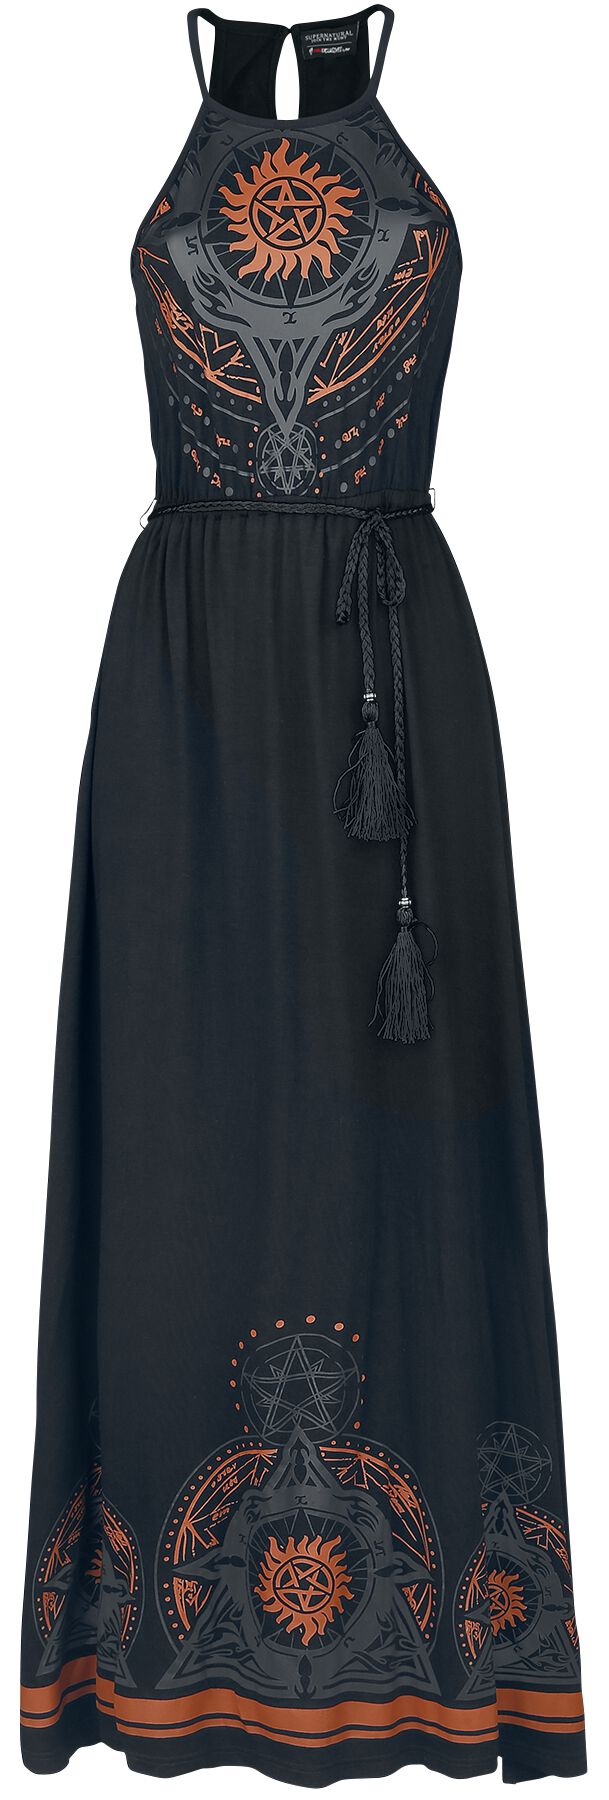 Supernatural Kleid lang - Mandala - S bis XXL - für Damen - Größe S - schwarz  - EMP exklusives Merchandise!